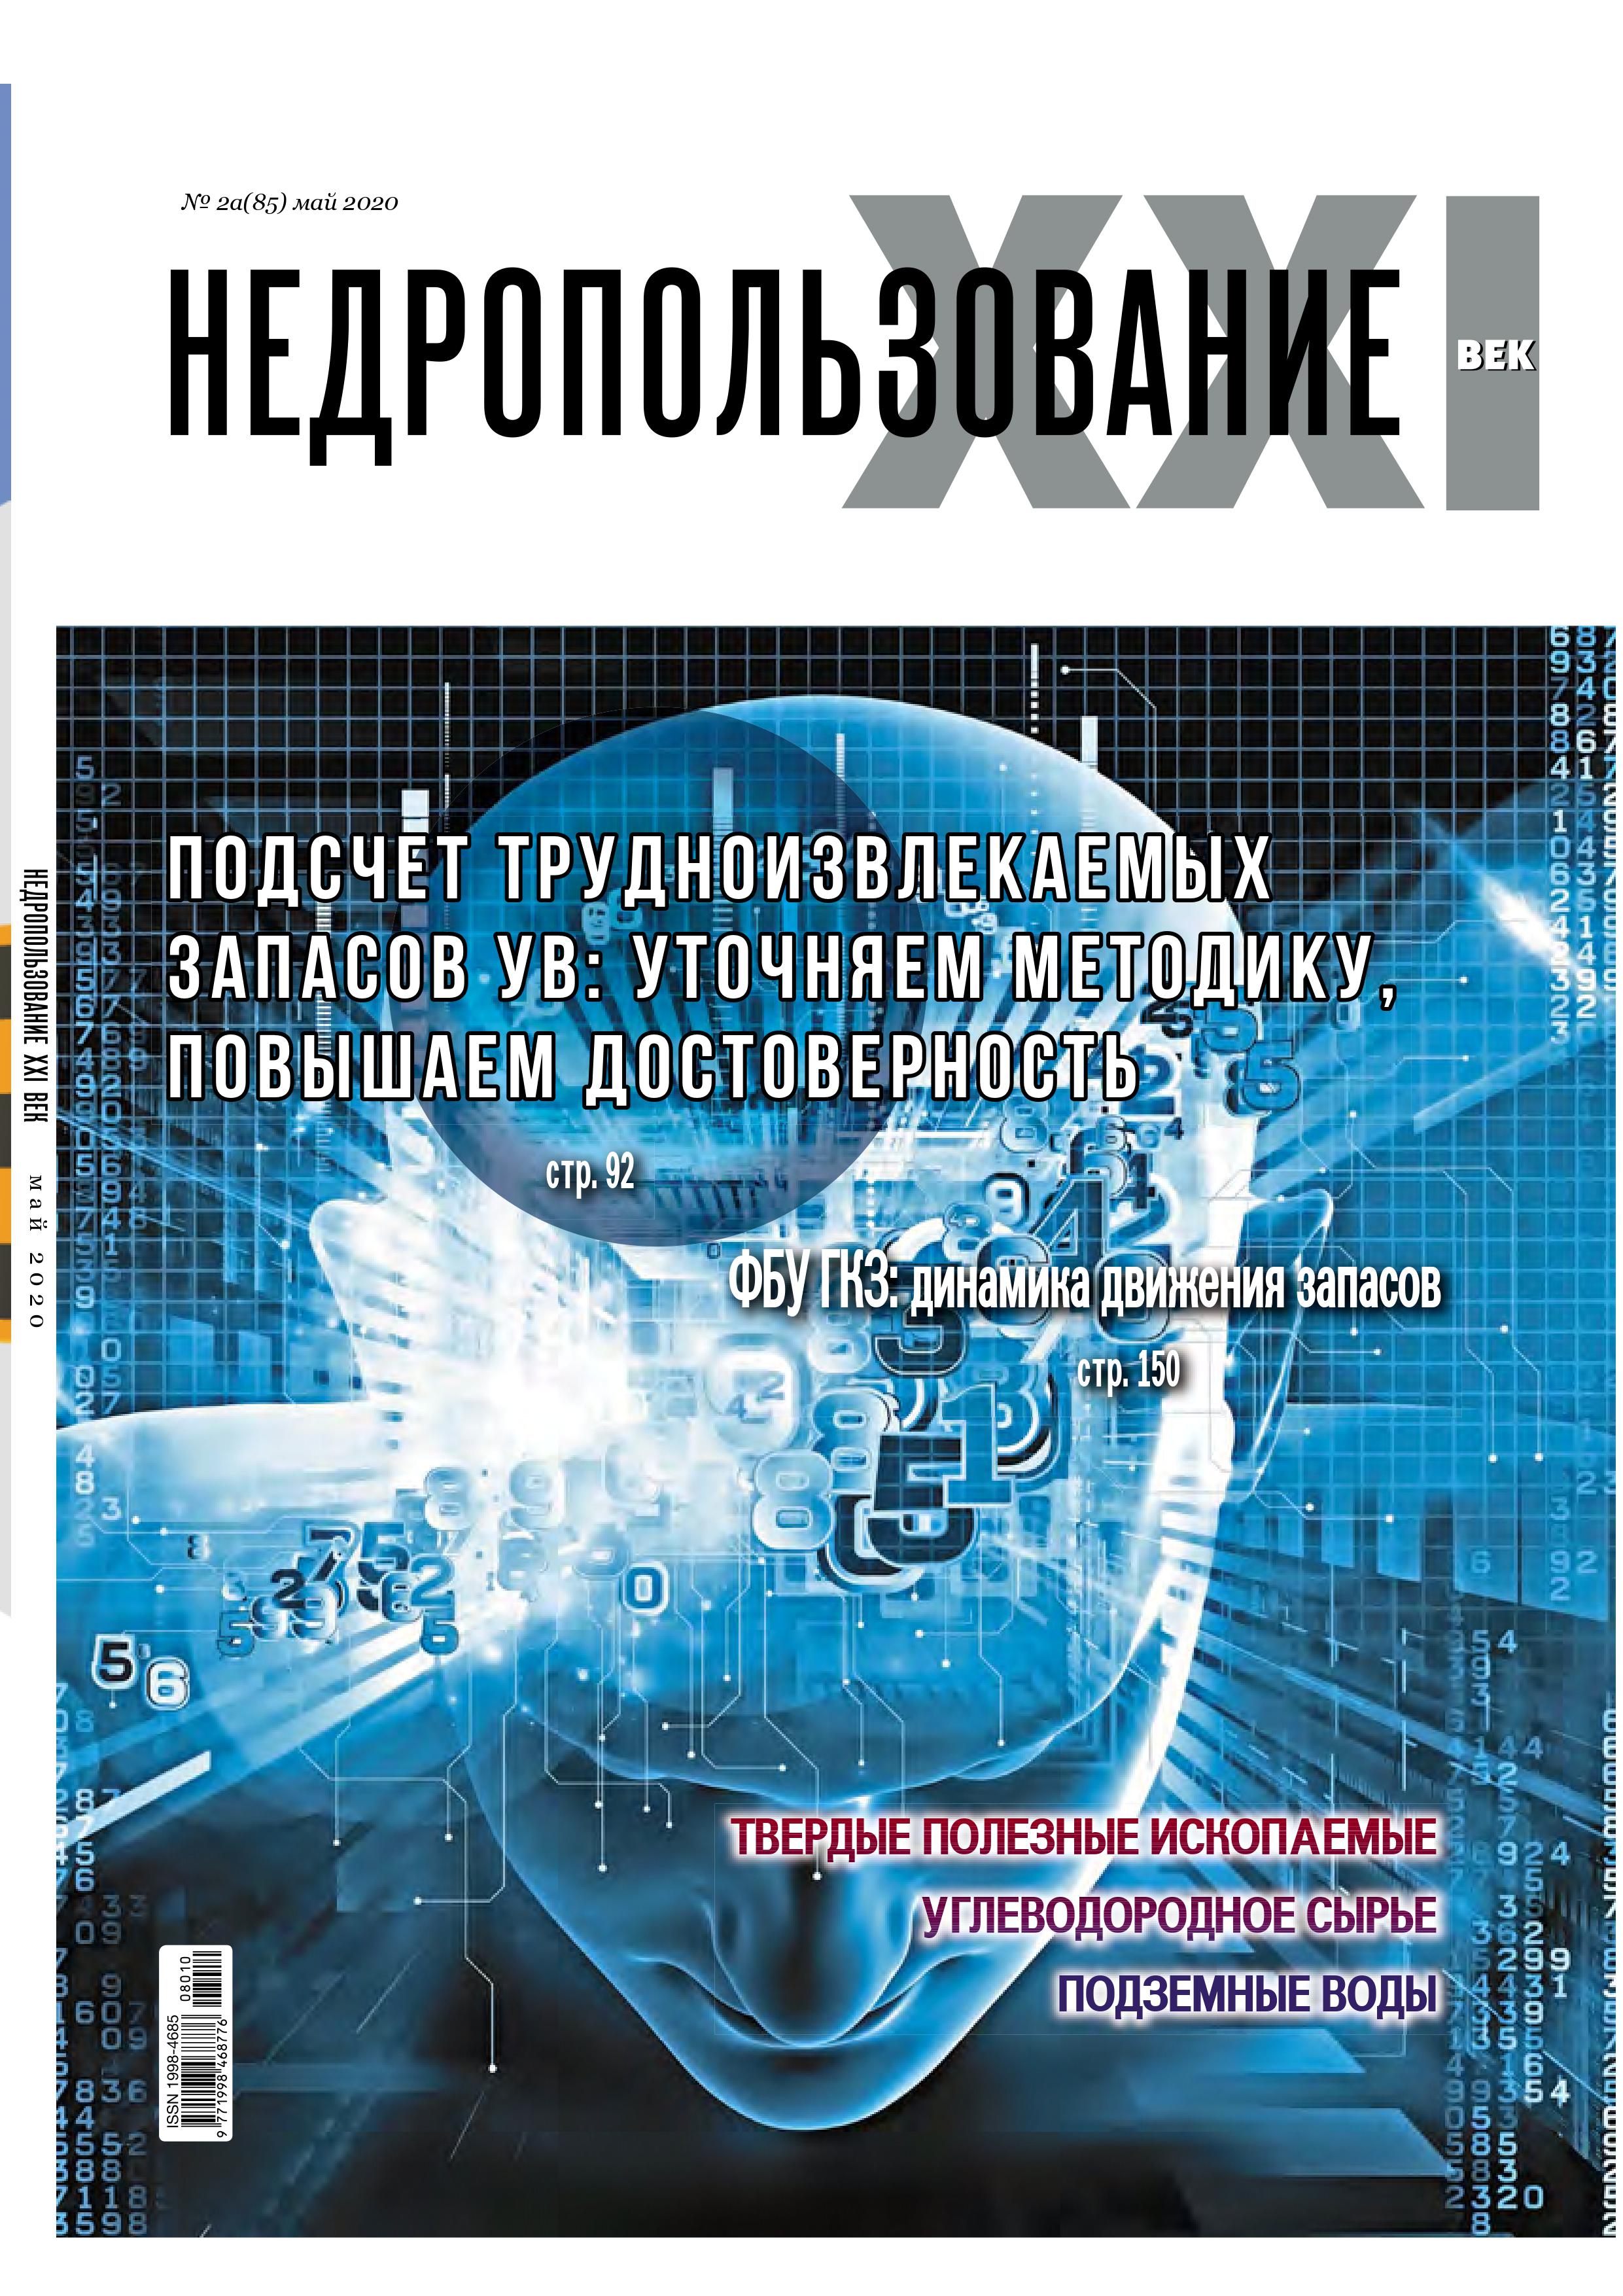 Выход внеочередного номера журнала "Недропользование XXI век" (№2а - май 2020 г.)